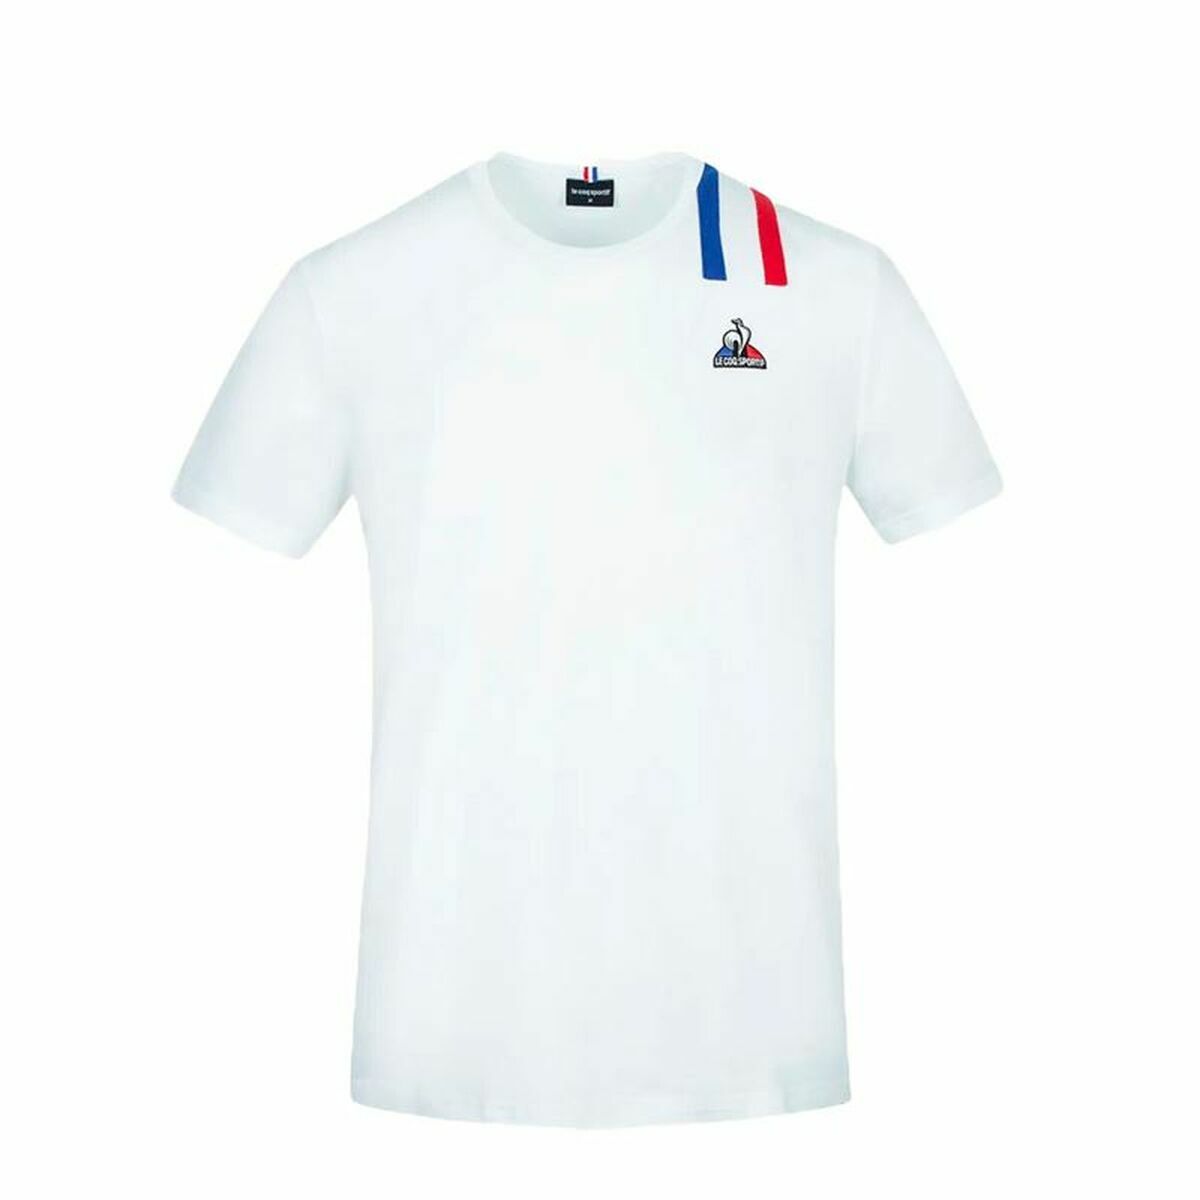 Unisex Short Sleeve T-Shirt Le coq sportif White